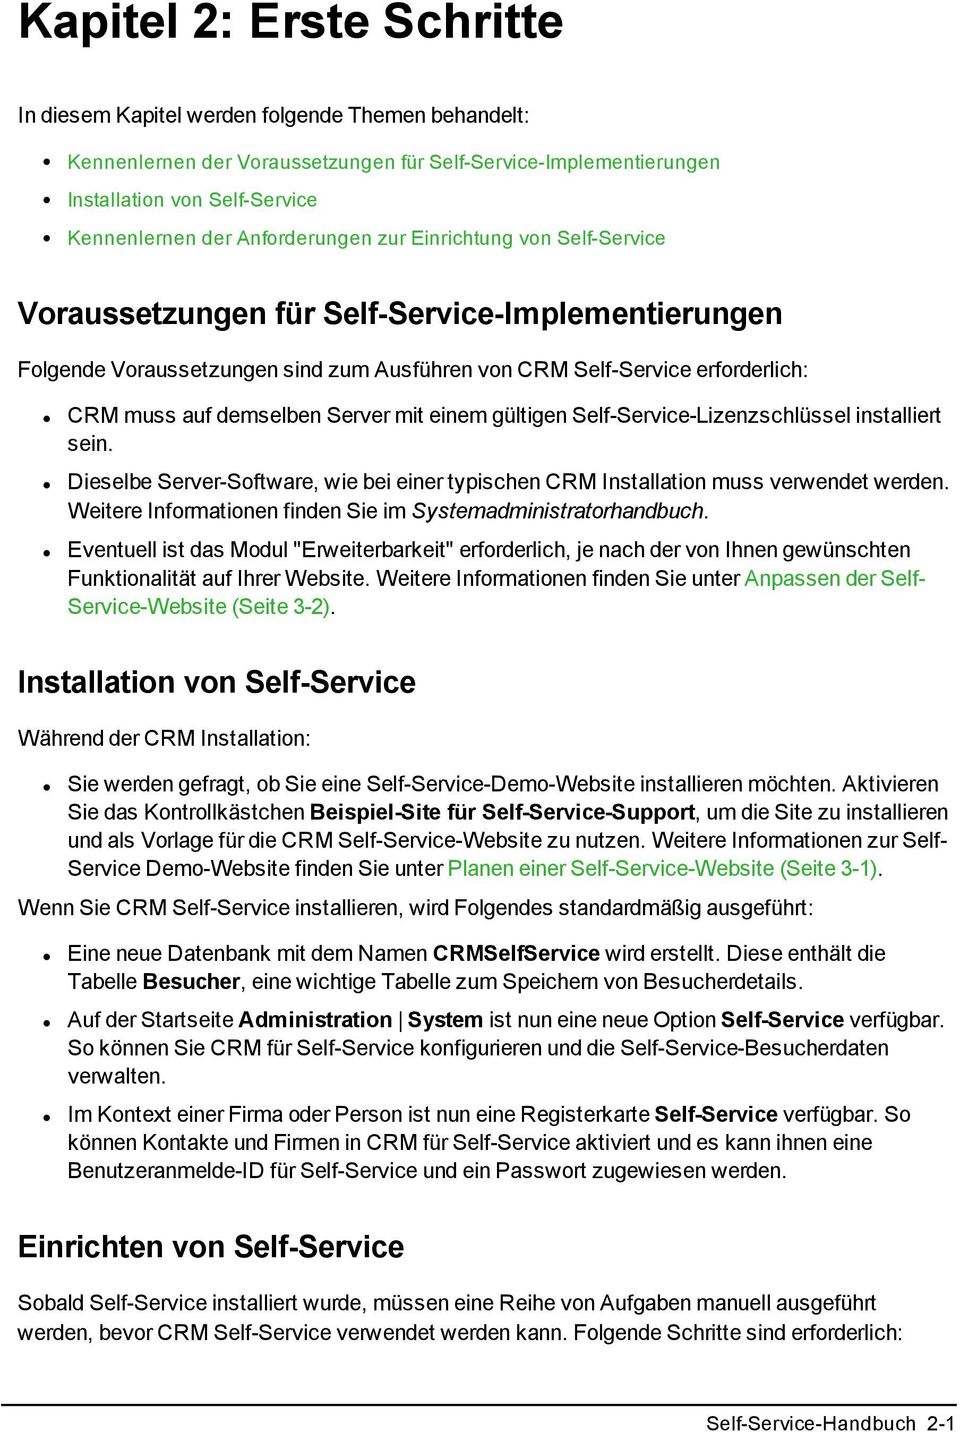 Server mit einem gültigen Self-Service-Lizenzschlüssel installiert sein. Dieselbe Server-Software, wie bei einer typischen CRM Installation muss verwendet werden.